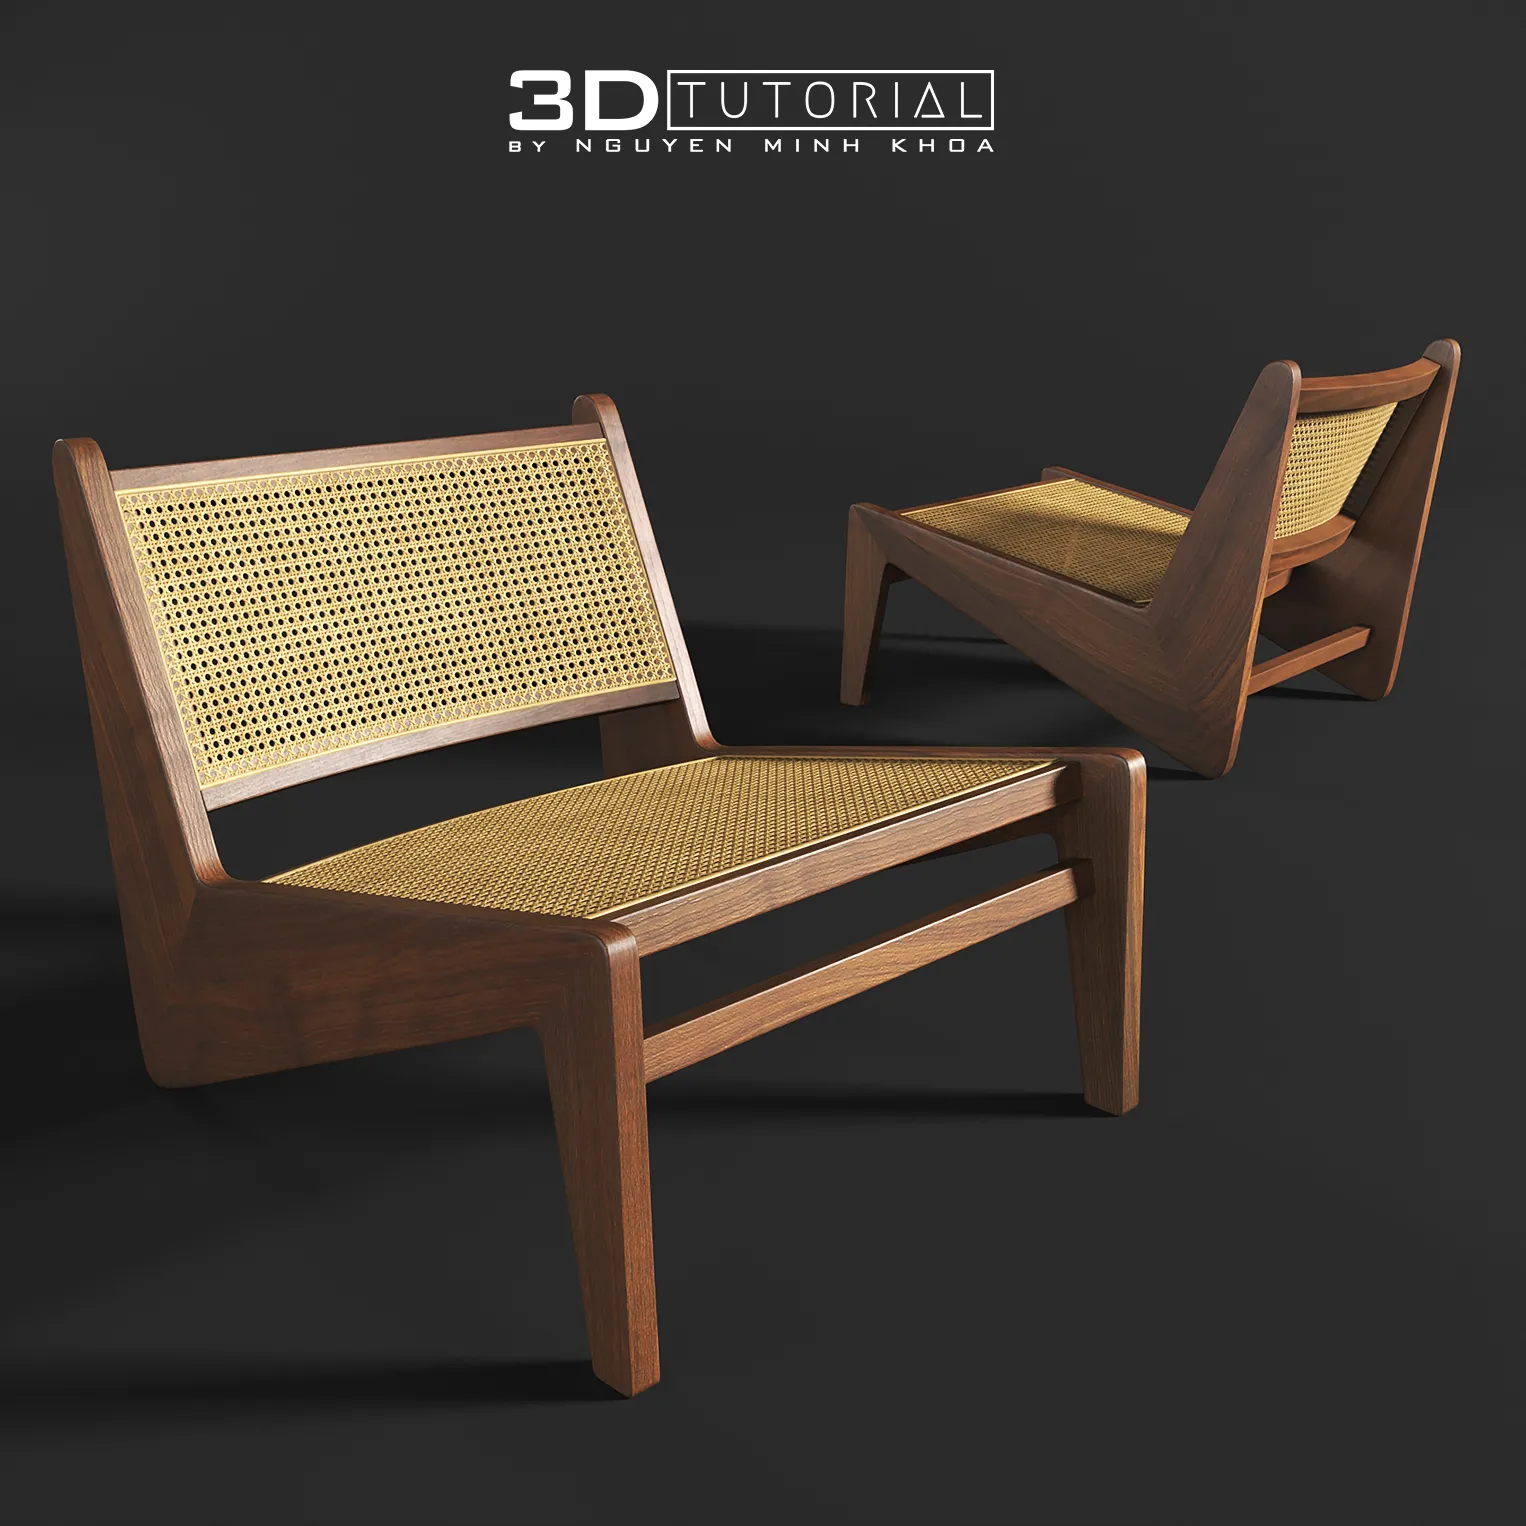 FURNITURE 3D MODELS – Jeanneret Kangaroo Chair modelbyNguyenMinhKhoa